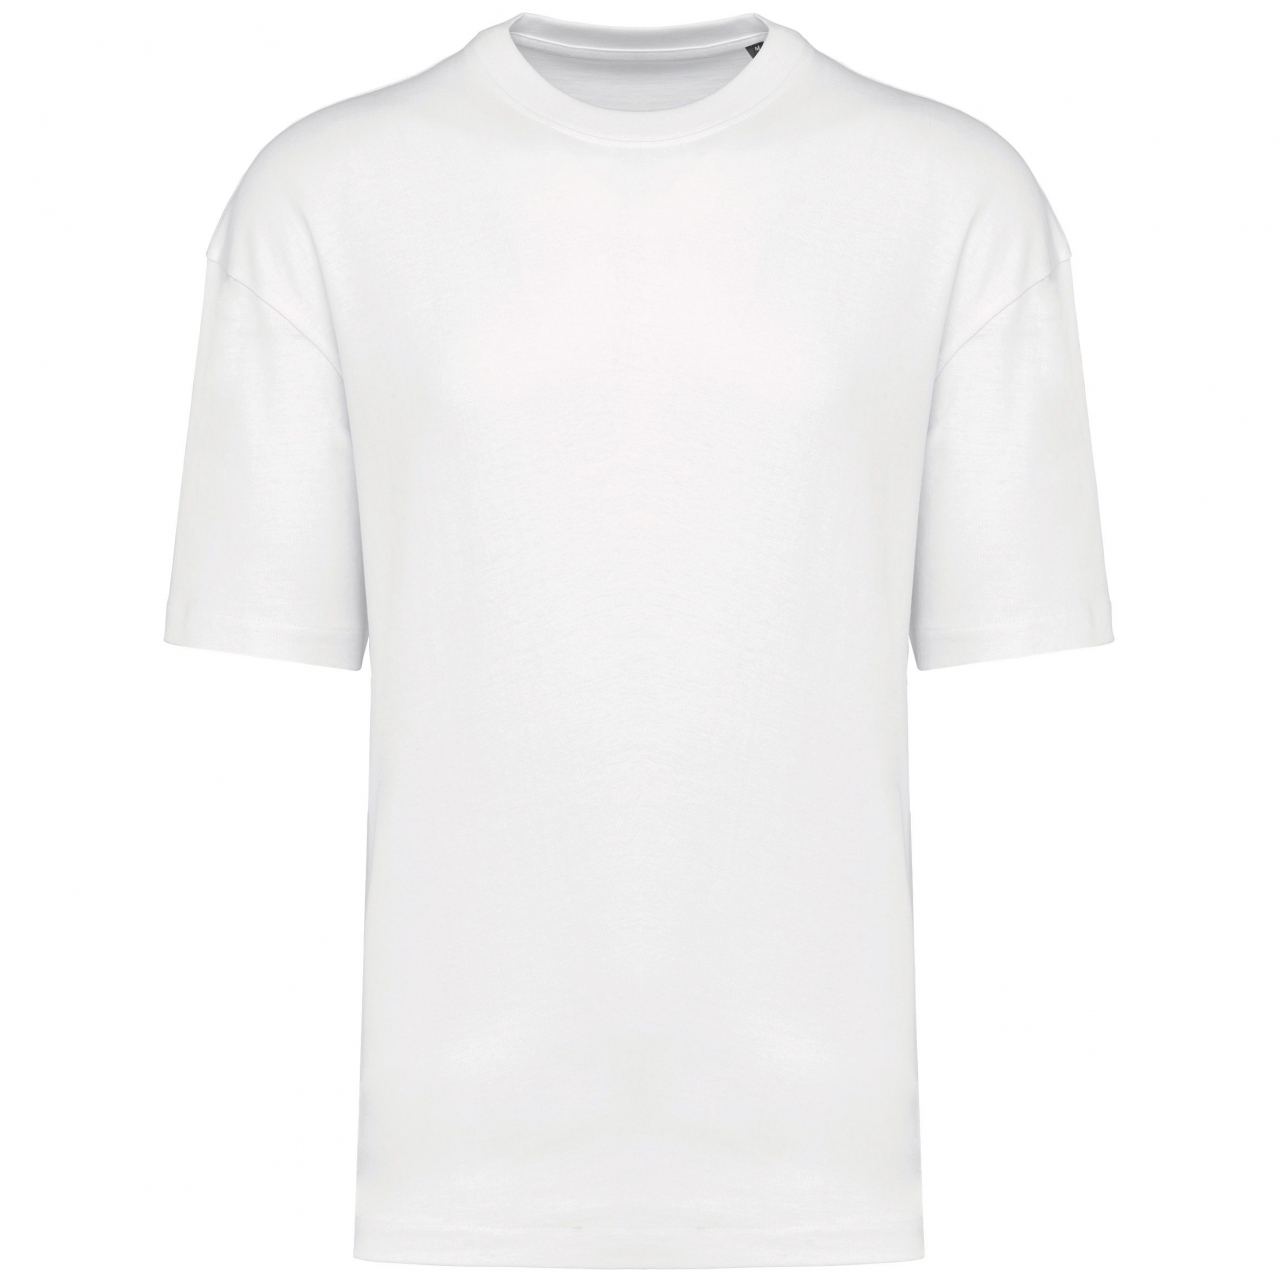 Pánské tričko Kariban Oversize - bílé, XS